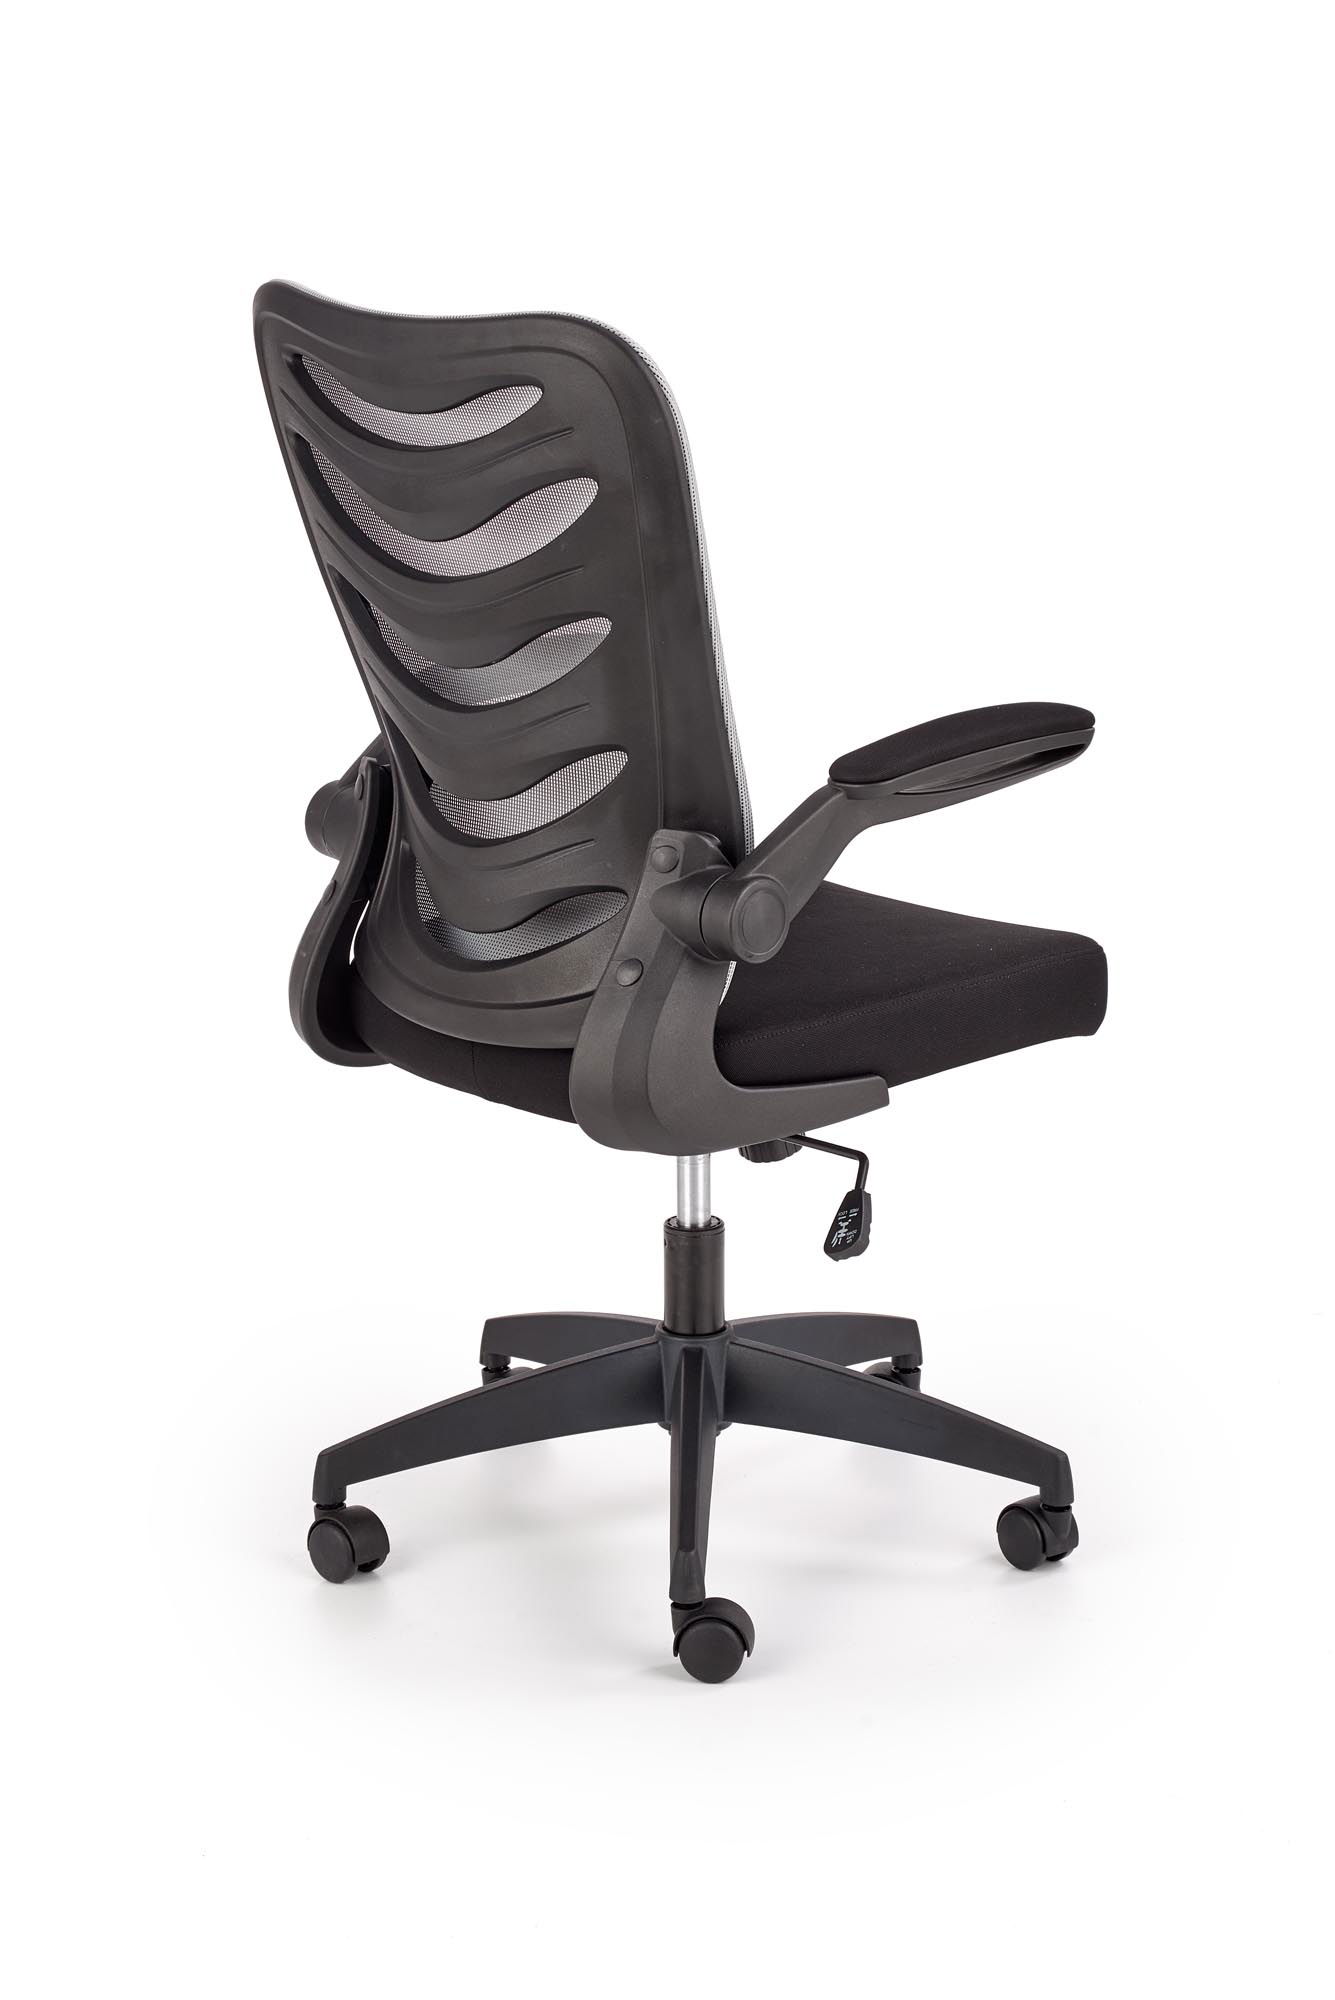 Biuro kėdė LOVREN, juoda/pilka - 7